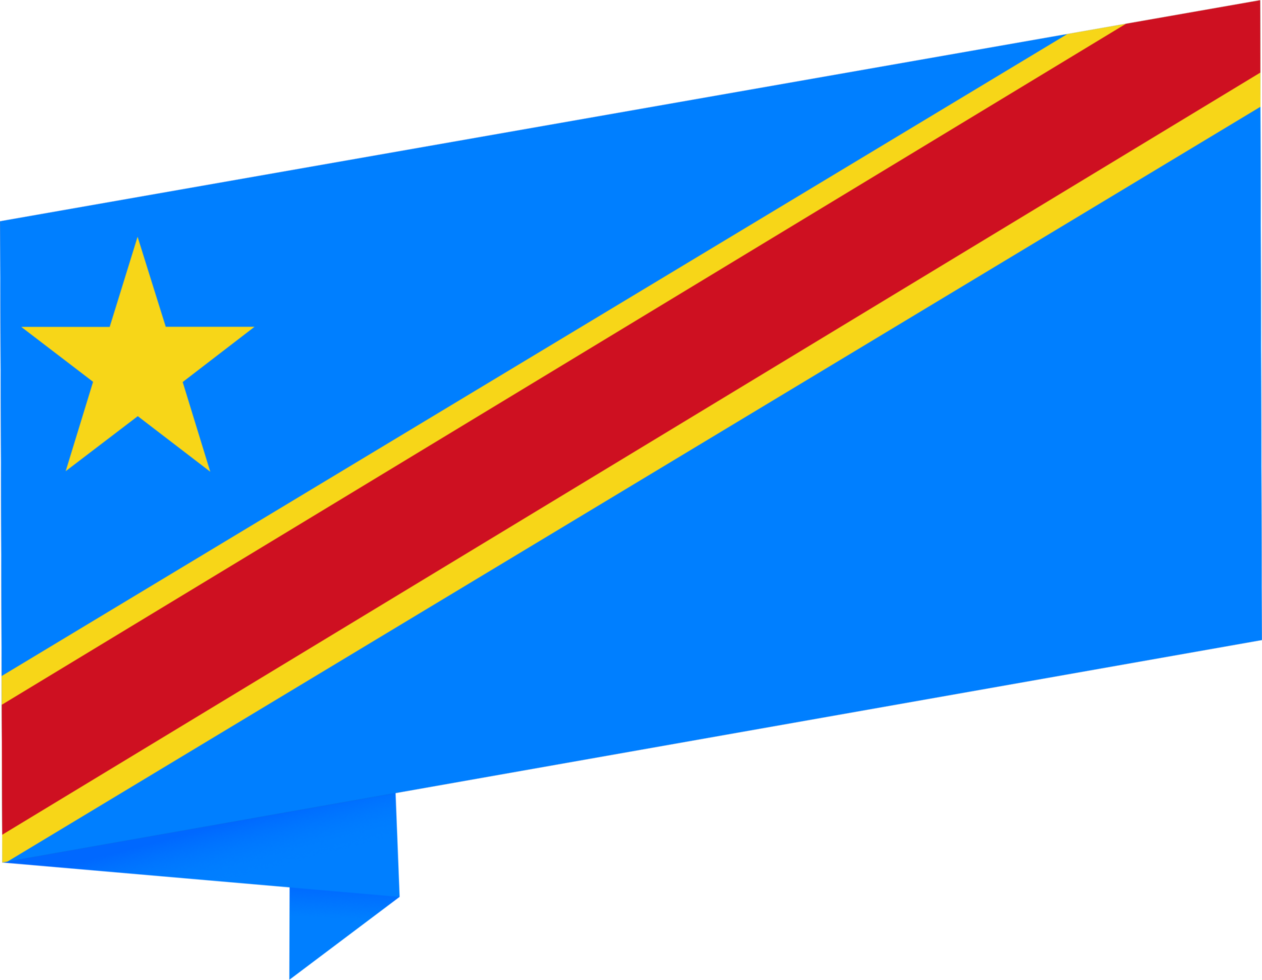 democratico repubblica di il congo bandiera onda isolato su png o trasparente sfondo